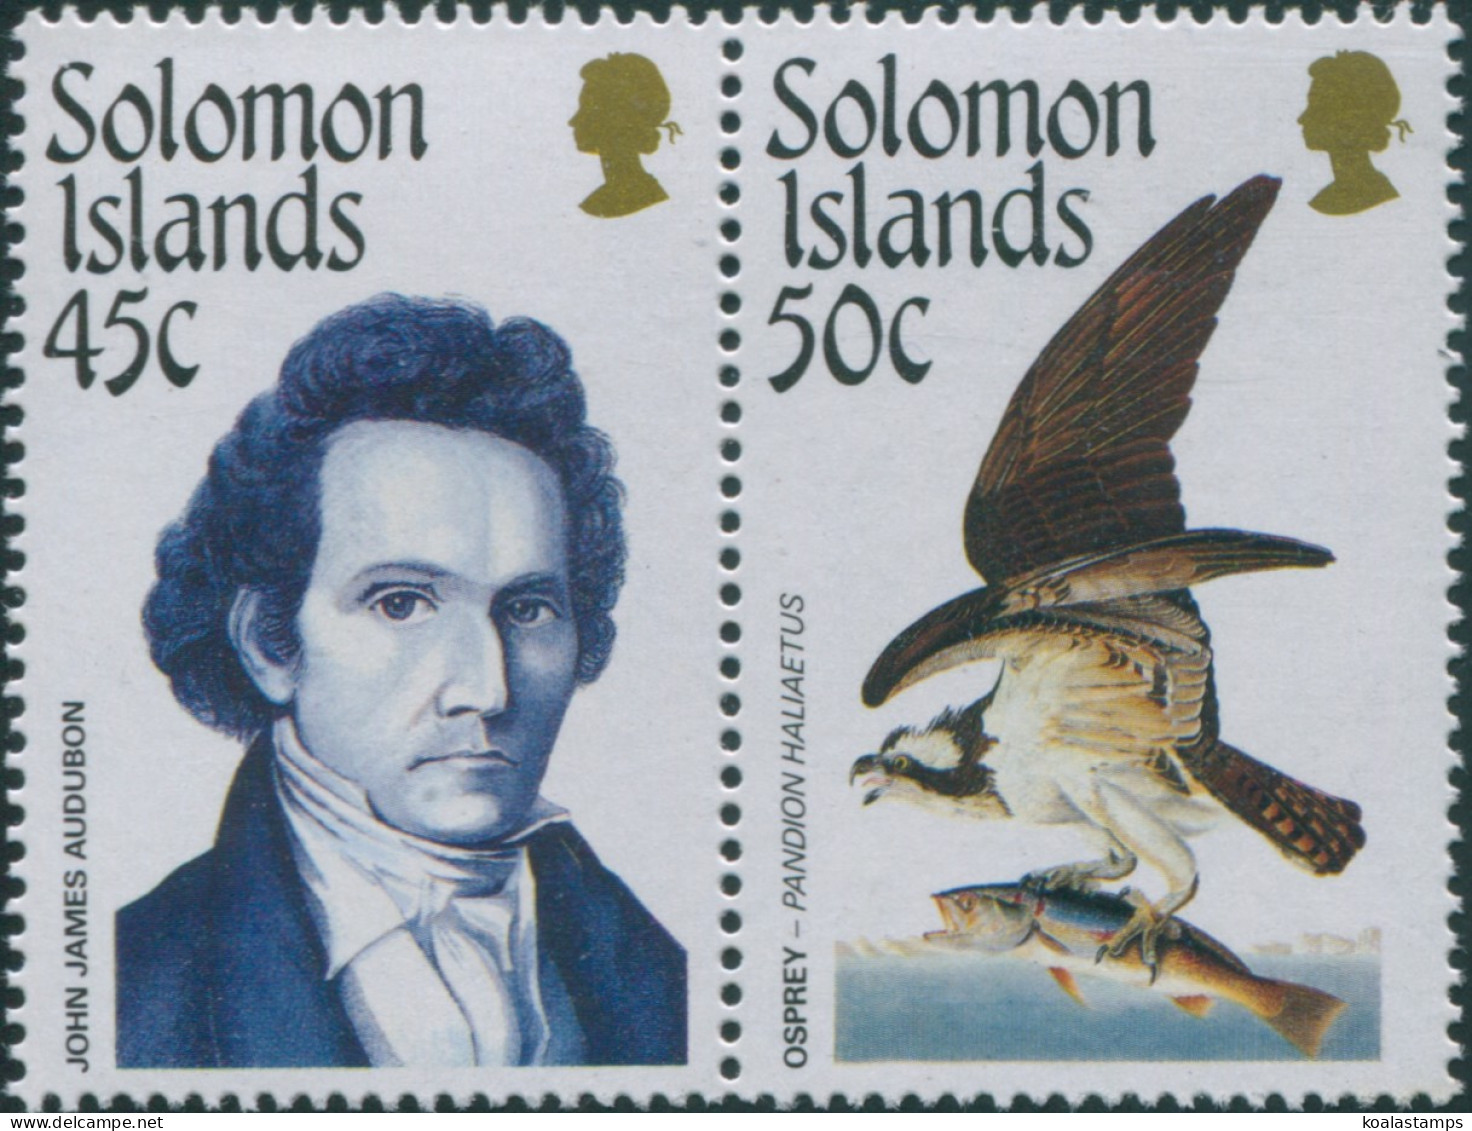 Solomon Islands 1986 SG556 Audubon Set Ex MS MNH - Solomon Islands (1978-...)